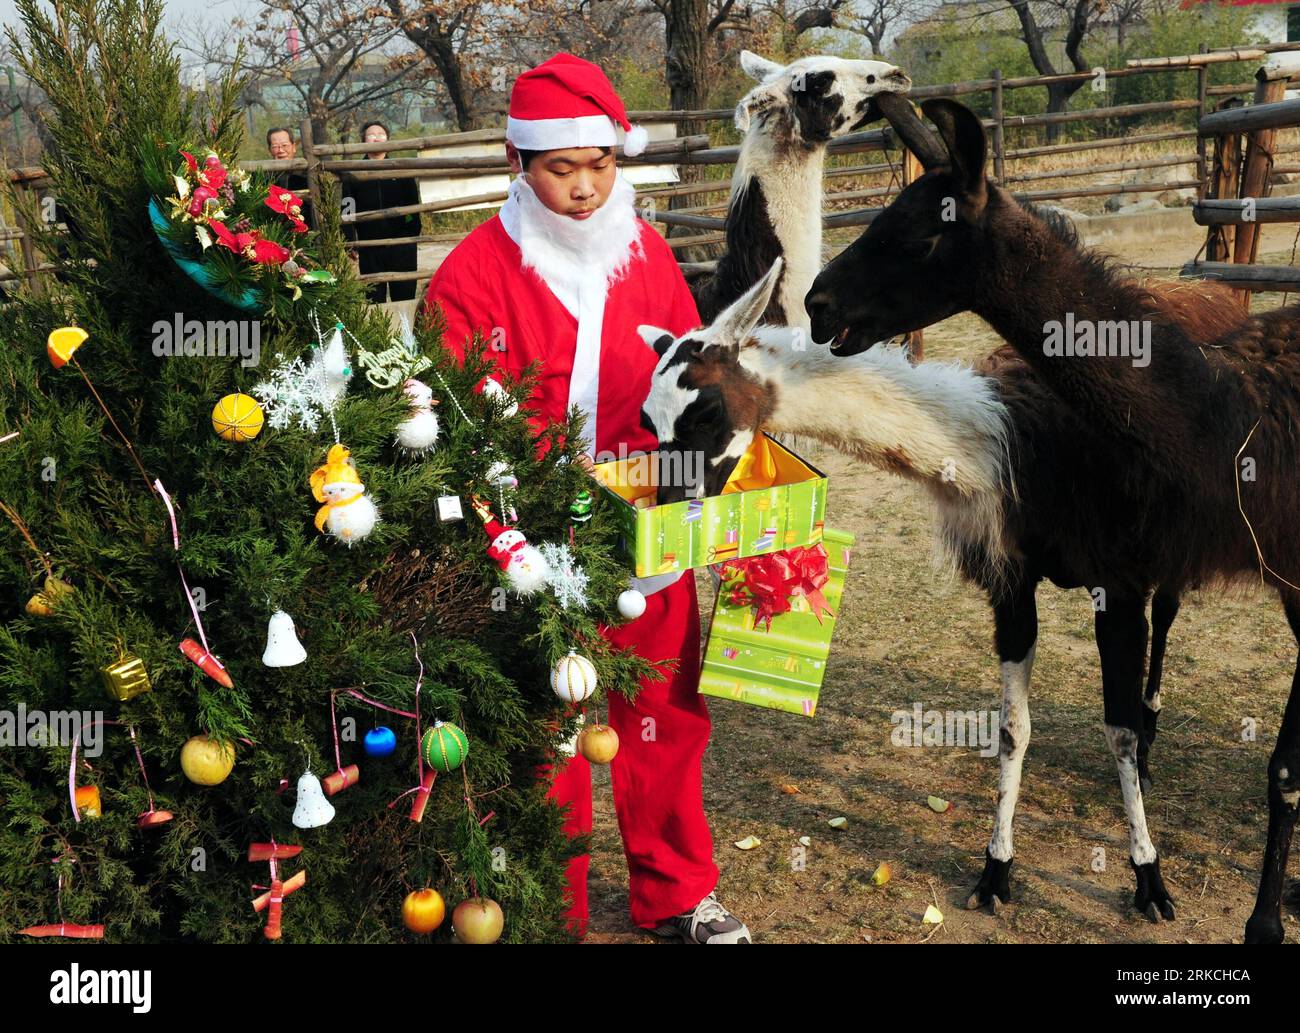 Bildnummer: 54768539 Datum: 23.12.2010 Copyright: imago/Xinhua (101224) -- XI AN, 24. Dezember 2010 (Xinhua) -- ein Feeder, der wie der Weihnachtsmann gekleidet ist, verteilt gut verpackte Lebensmittel an Alpakas während einer Aktivität zum bevorstehenden Weihnachtsfeiertag im Qinling Wild Animal Zoo in Xi an, der Hauptstadt der nordwestchinesischen Provinz Shaanxi, 23. Dezember 2010. (Xinhua/Yuan Jingzhi) (hdt) CHINA-XI AN-ZOO-CHRISTMAS (CN) PUBLICATIONxNOTxINxCHN Gesellschaft Weihnachten Tiere Geschenke kbdig xub 2010 quer Highlight Uraufführung kurios Komik o0 Bescherung Weihnachtsmann Bildnummer 54768539 Datum 23 12 2010 Copyright Stockfoto